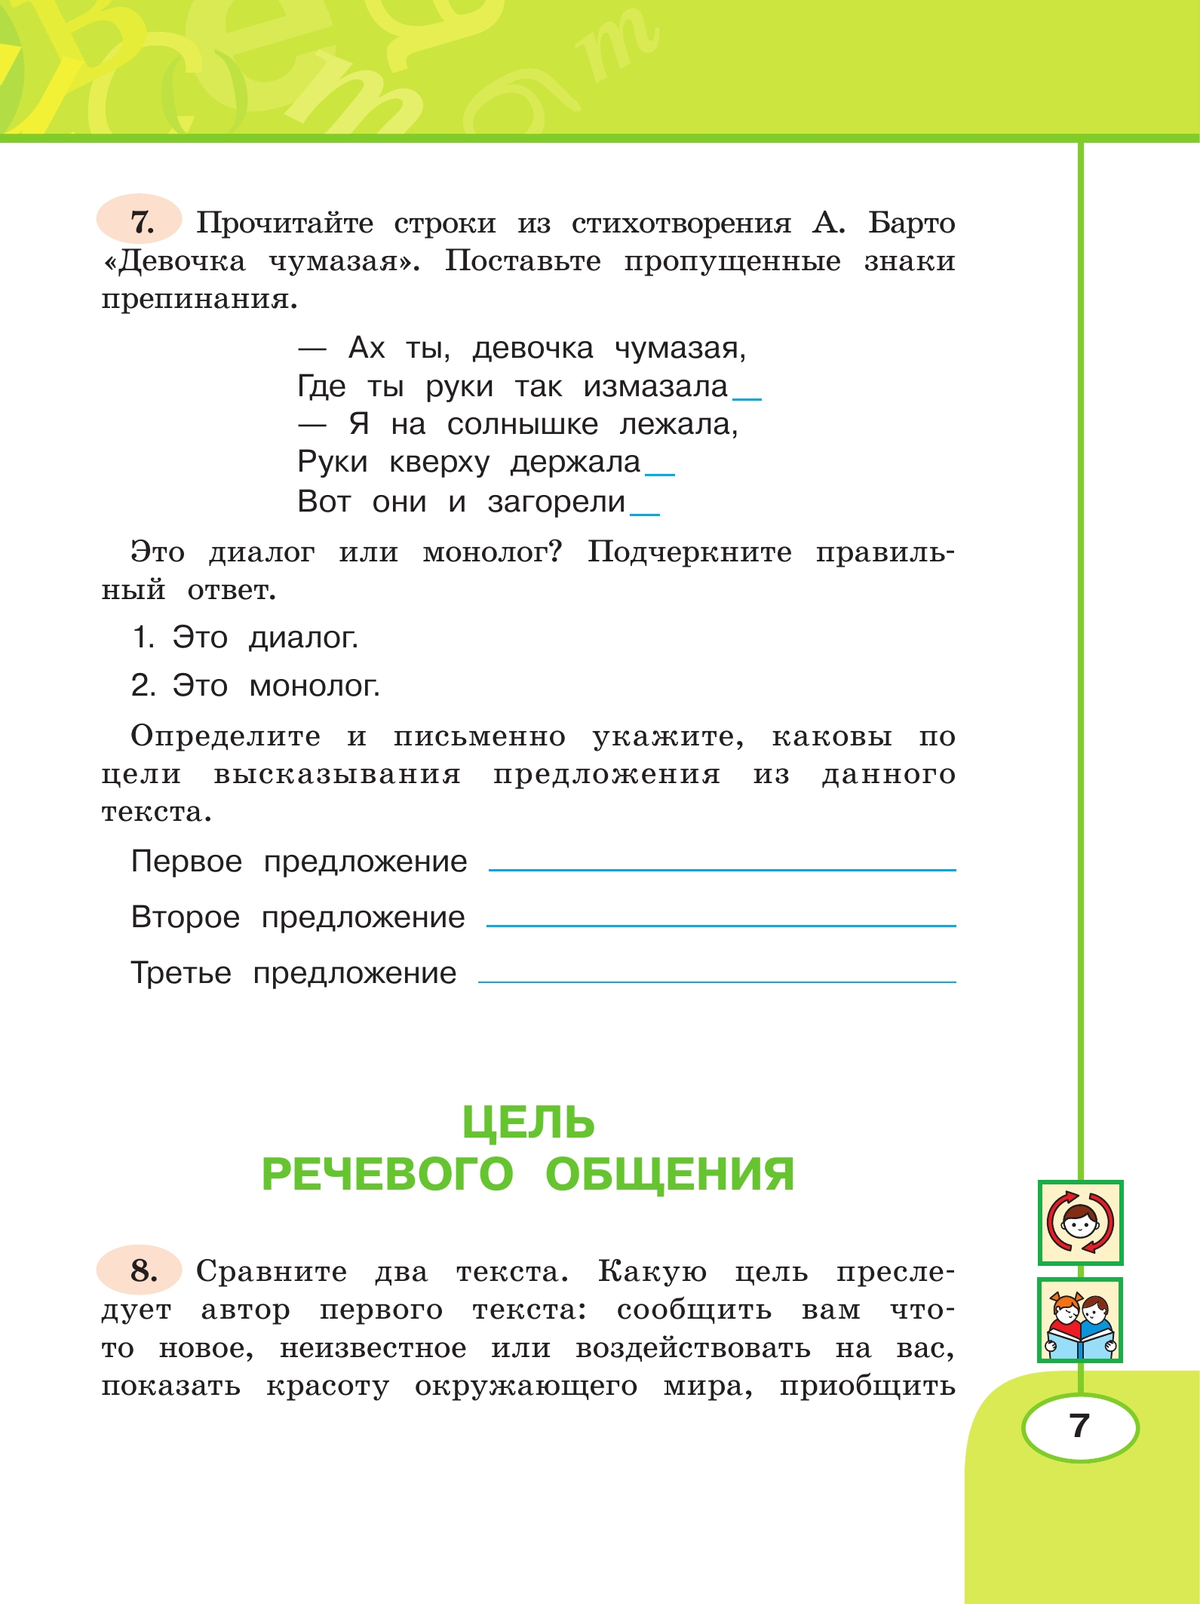 Русский язык. Рабочая тетрадь. 4 класс. В 2 частях. Часть 1. 4